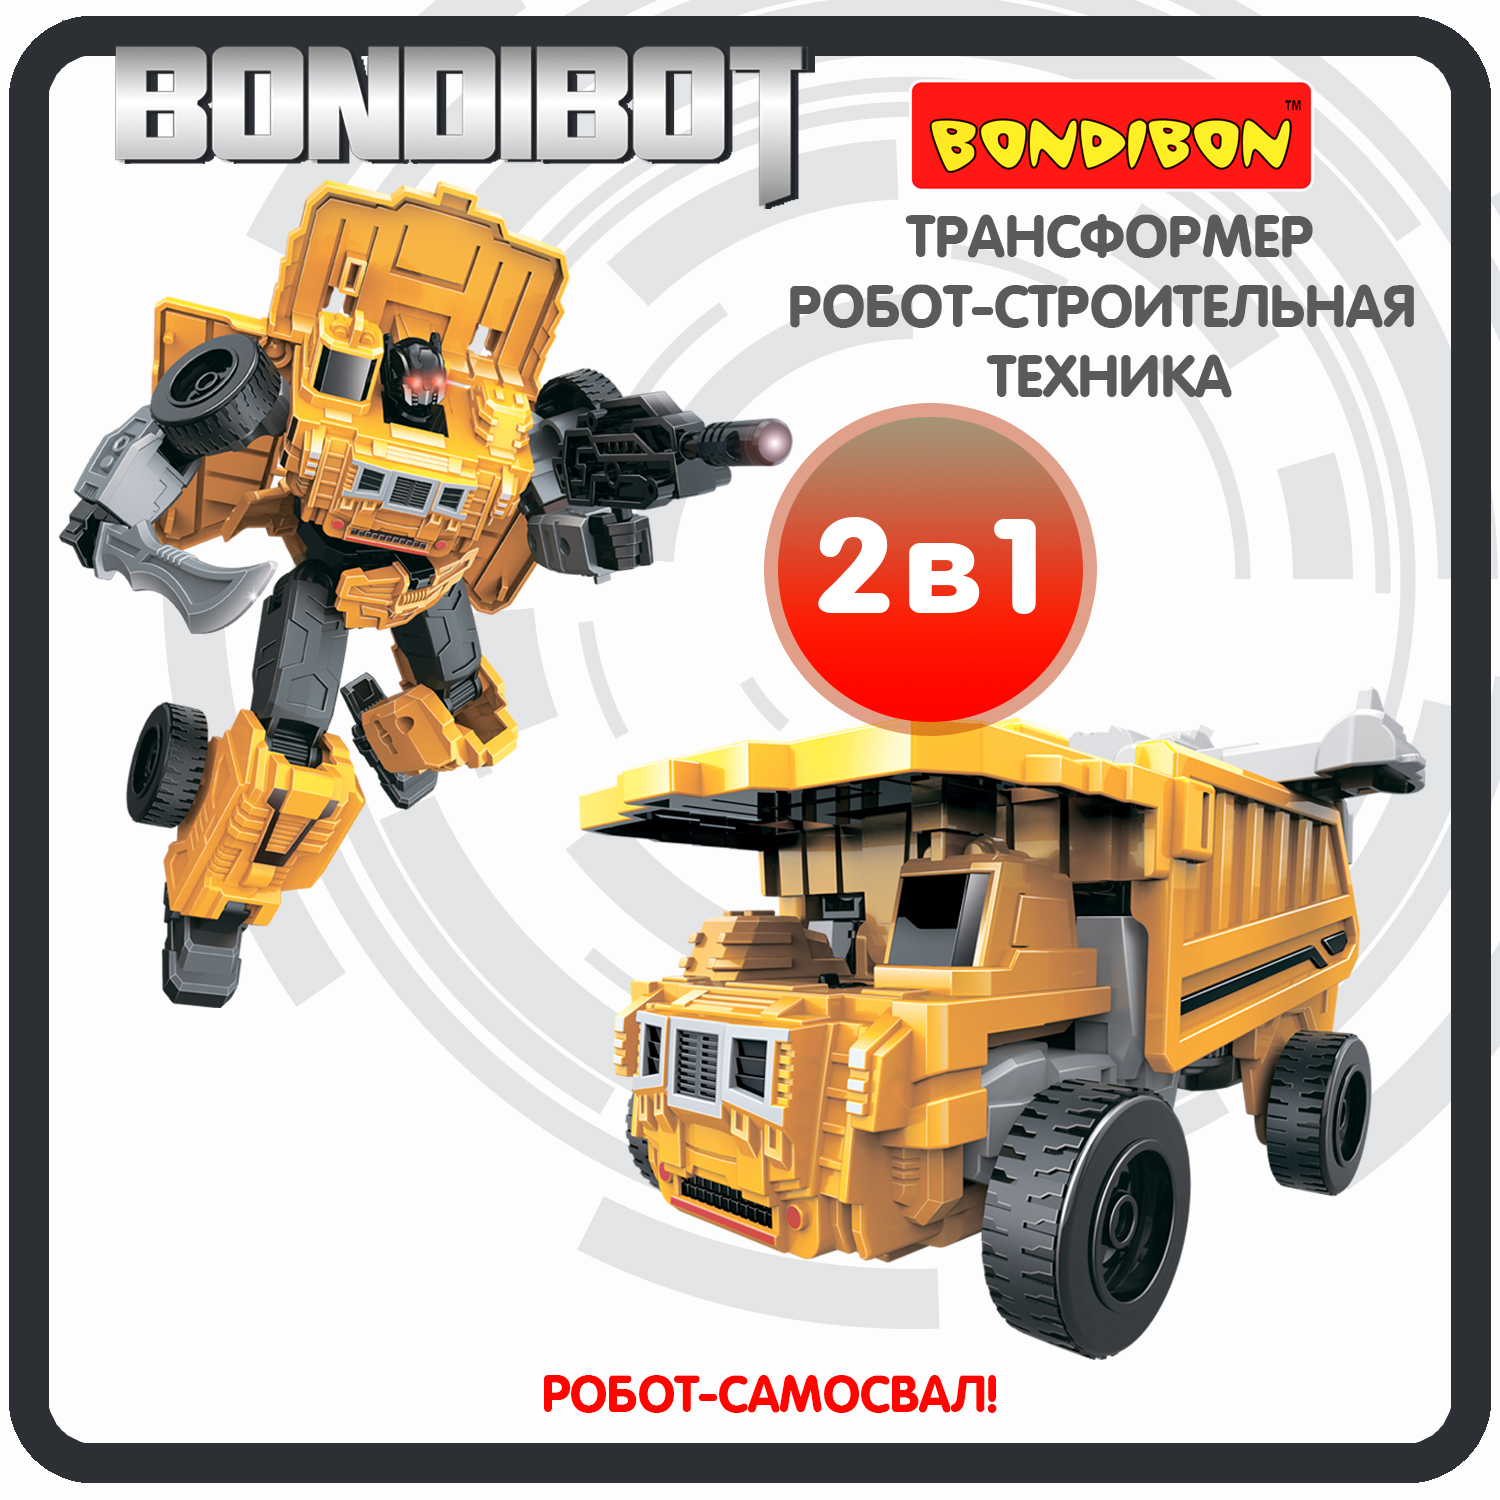 Трансформер робот-строительная техника, 2в1 BONDIBOT Bondibon, самосвал / ВВ6046 трансформер робот строительная техника 2в1 bondibot bondibon самосвал вв6052